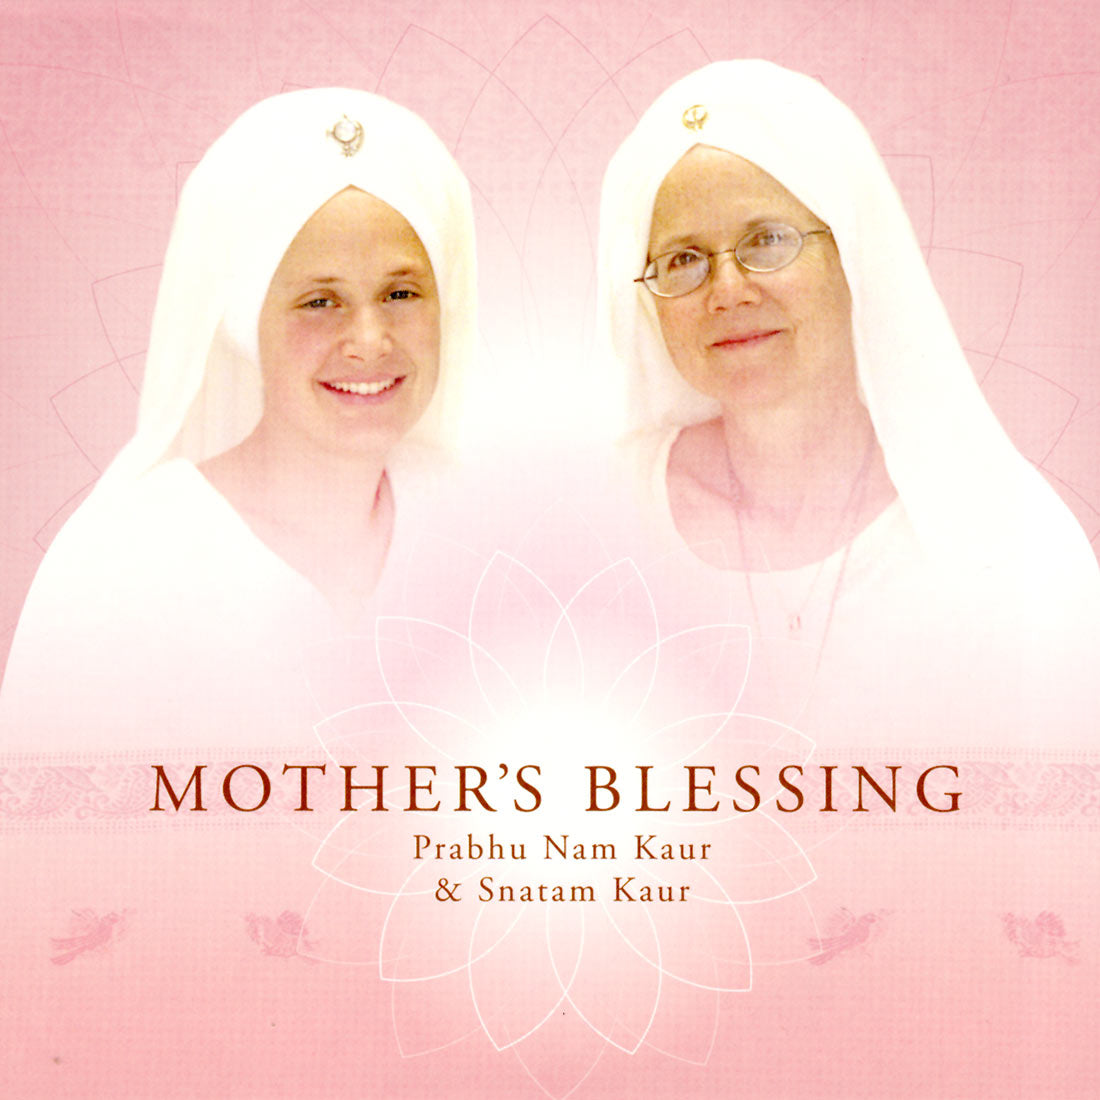 Mother's Blessing - Prabhu Nam Kaur & Snatam Kaur komplett